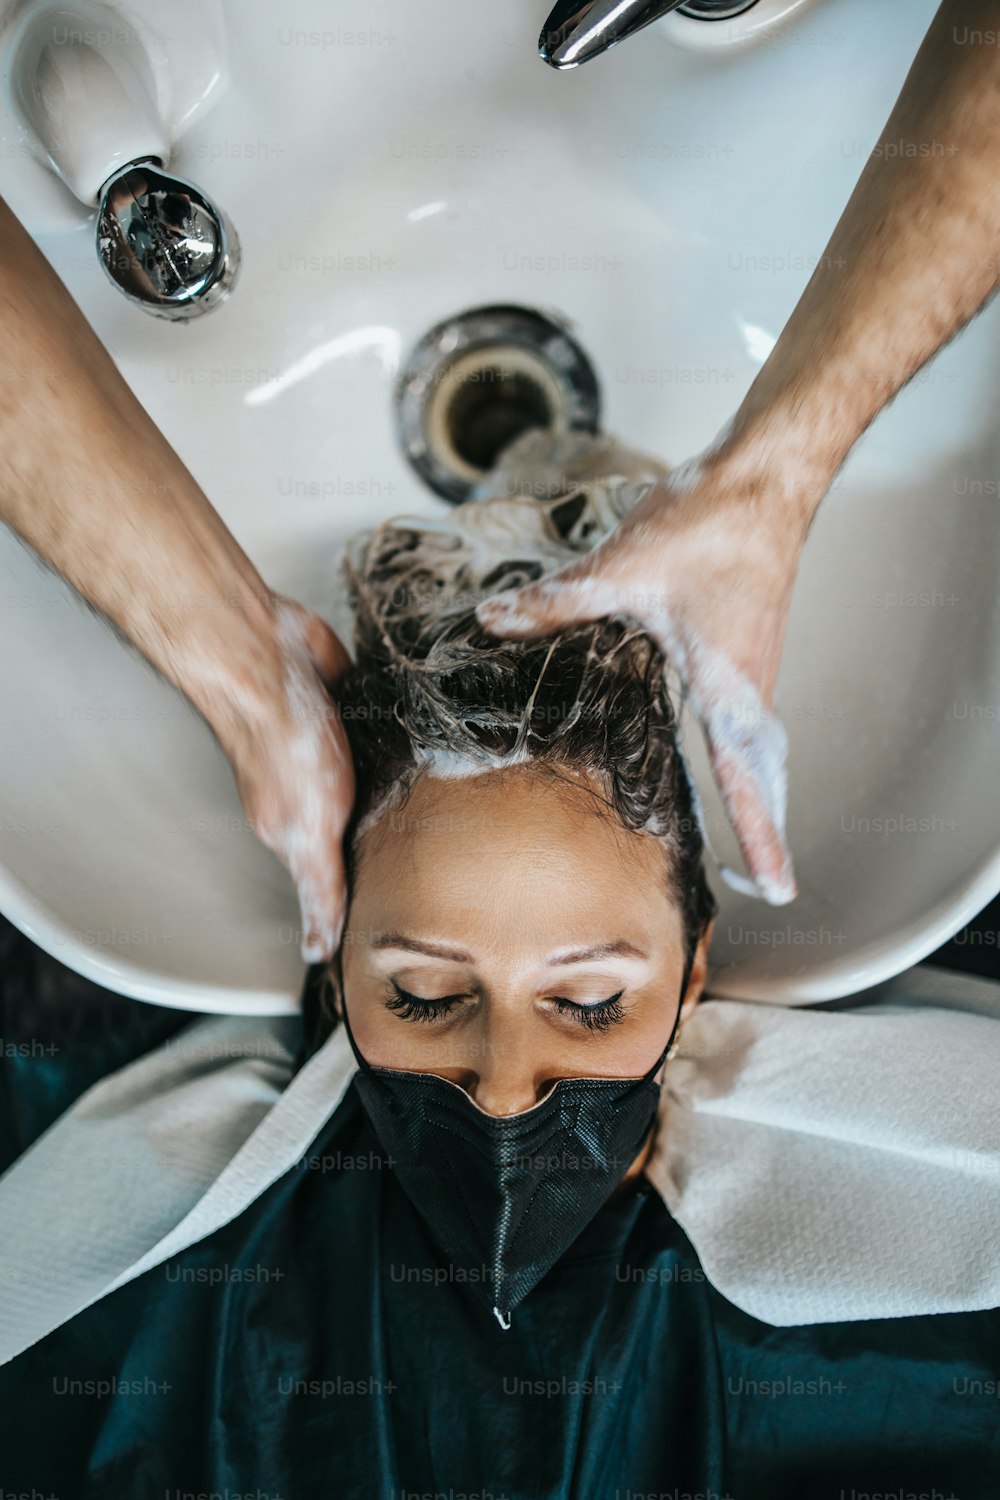 Friseur, der die Haare einer schönen jungen erwachsenen Frau im Friseursalon wäscht. Sie trägt eine Gesichtsschutzmaske als Schutz vor einer Viruspandemie.